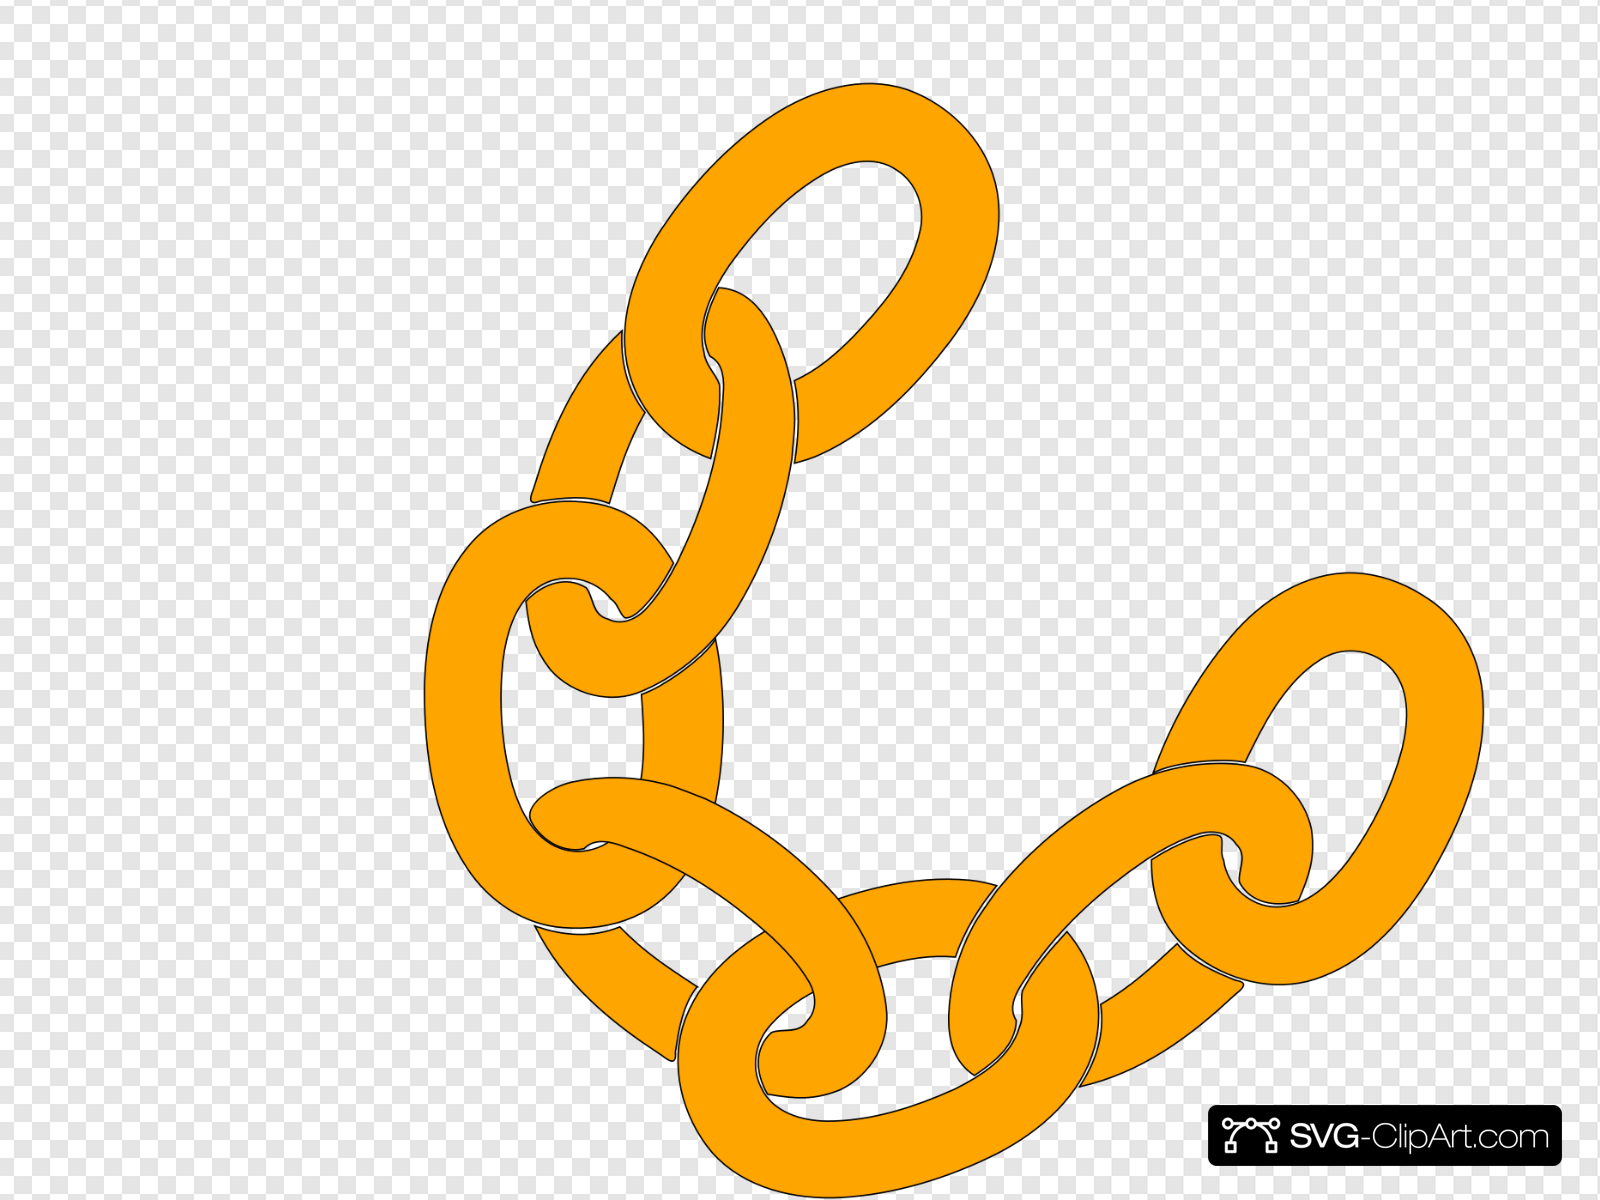 Orange Chain Clip art, Icon and SVG